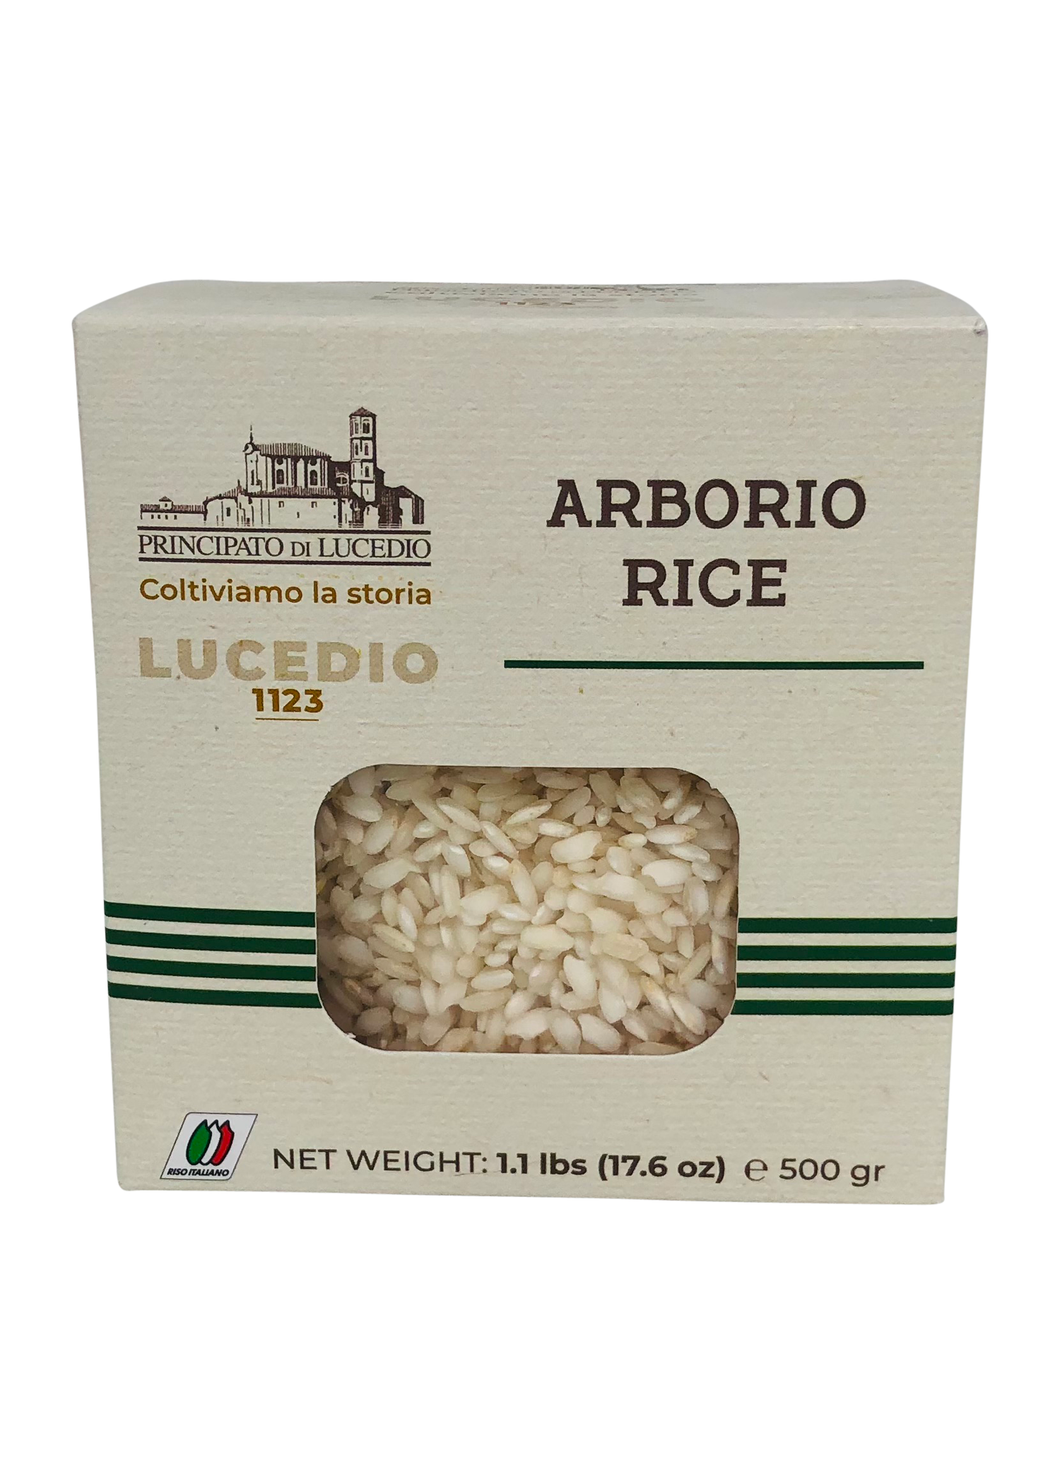 Arborio Risotto Rice